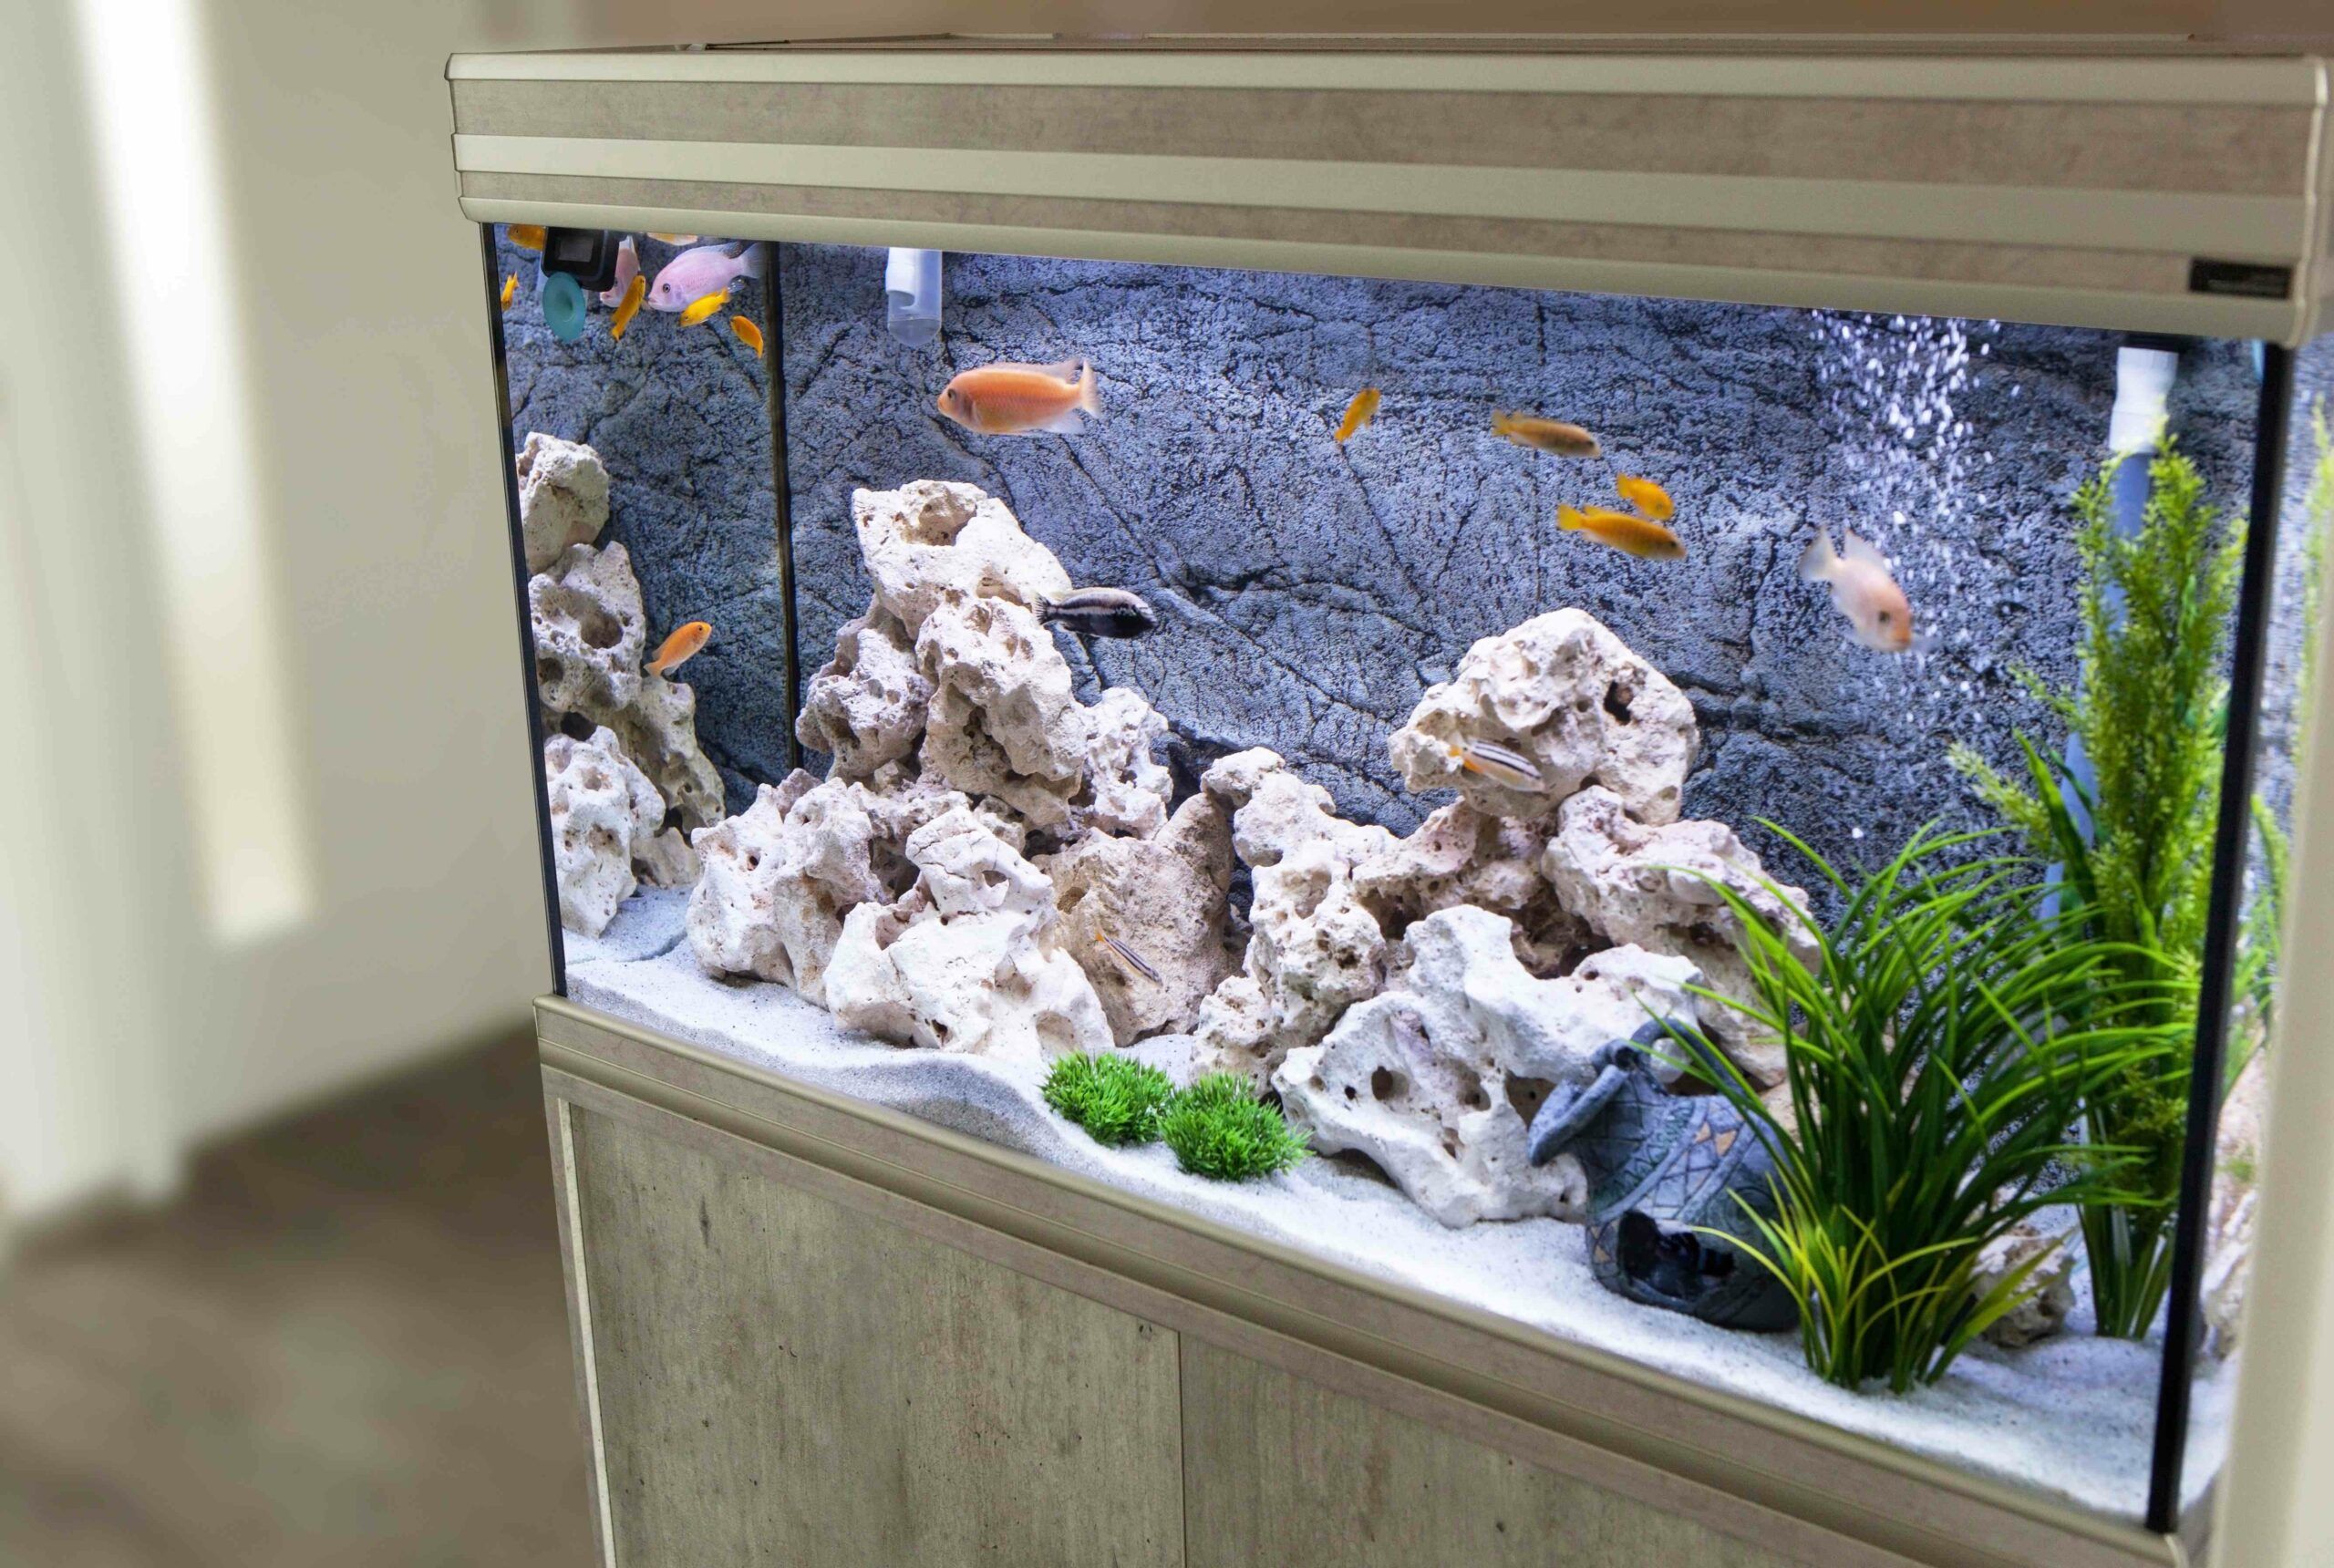 Comment gérer son aquarium et ses poissons pendant les vacances ?